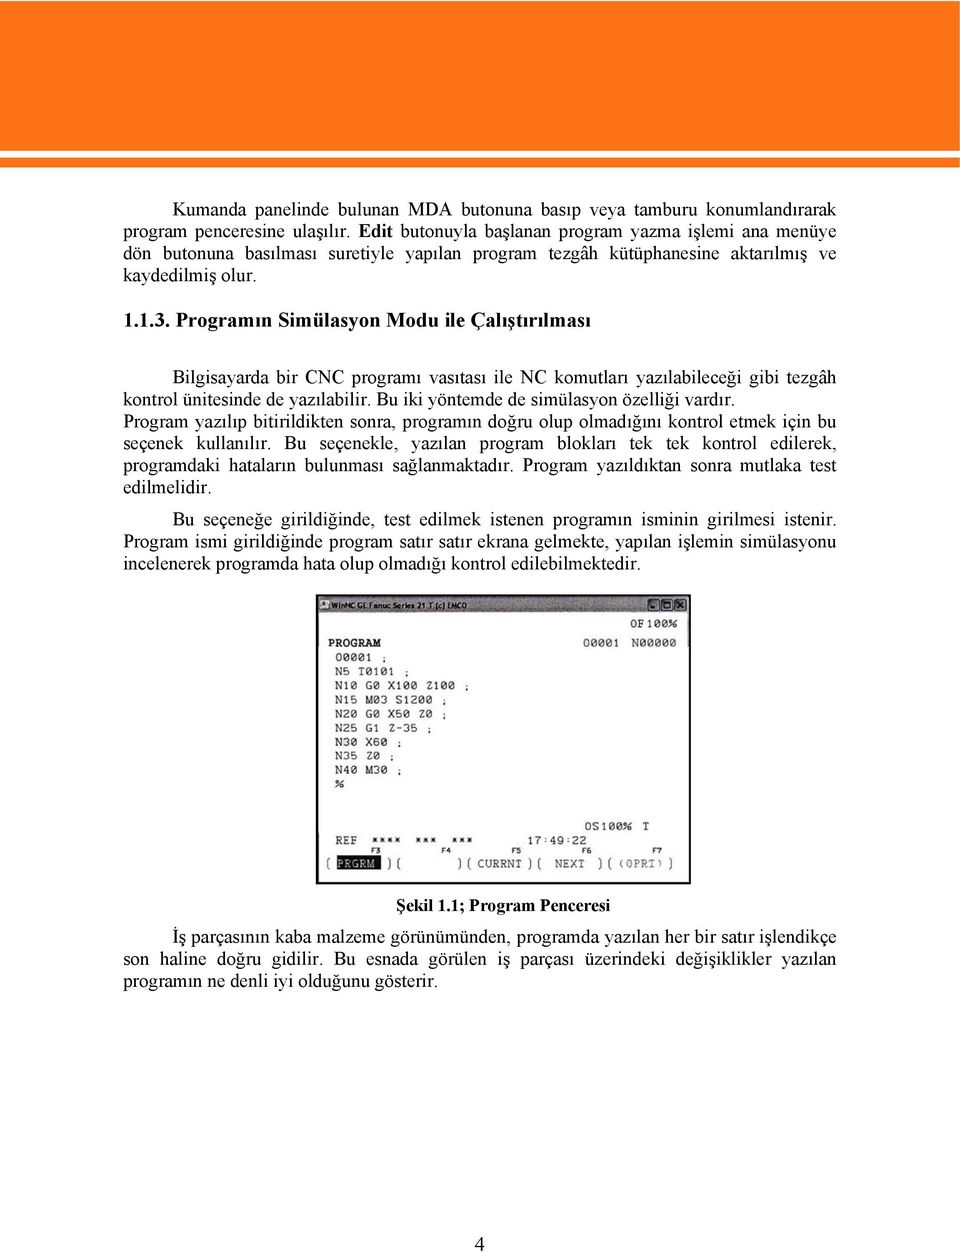 Programın Simülasyon Modu ile Çalıştırılması Bilgisayarda bir CNC programı vasıtası ile NC komutları yazılabileceği gibi tezgâh kontrol ünitesinde de yazılabilir.